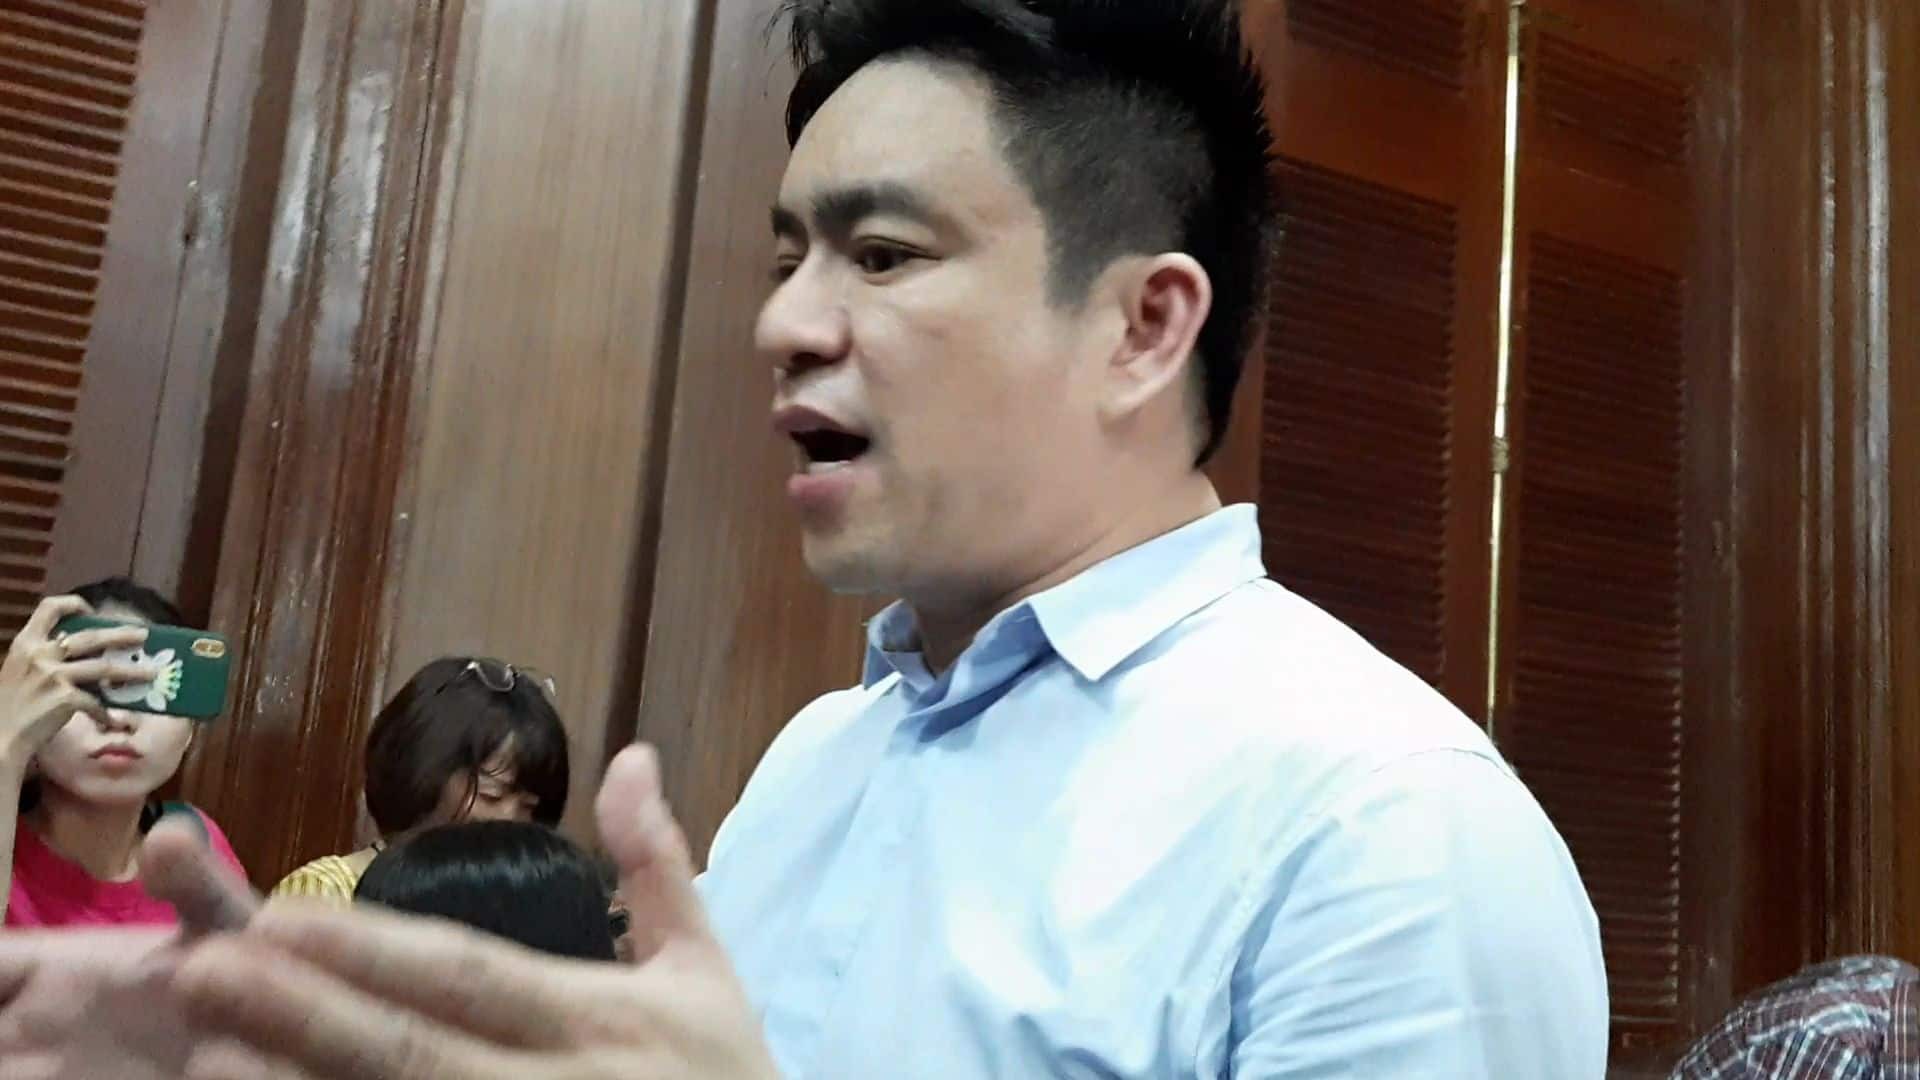 Vợ cũ lĩnh án 18 tháng tù, bác sĩ Chiêm Quốc Thái tuyên bố sẽ kháng cáo-1